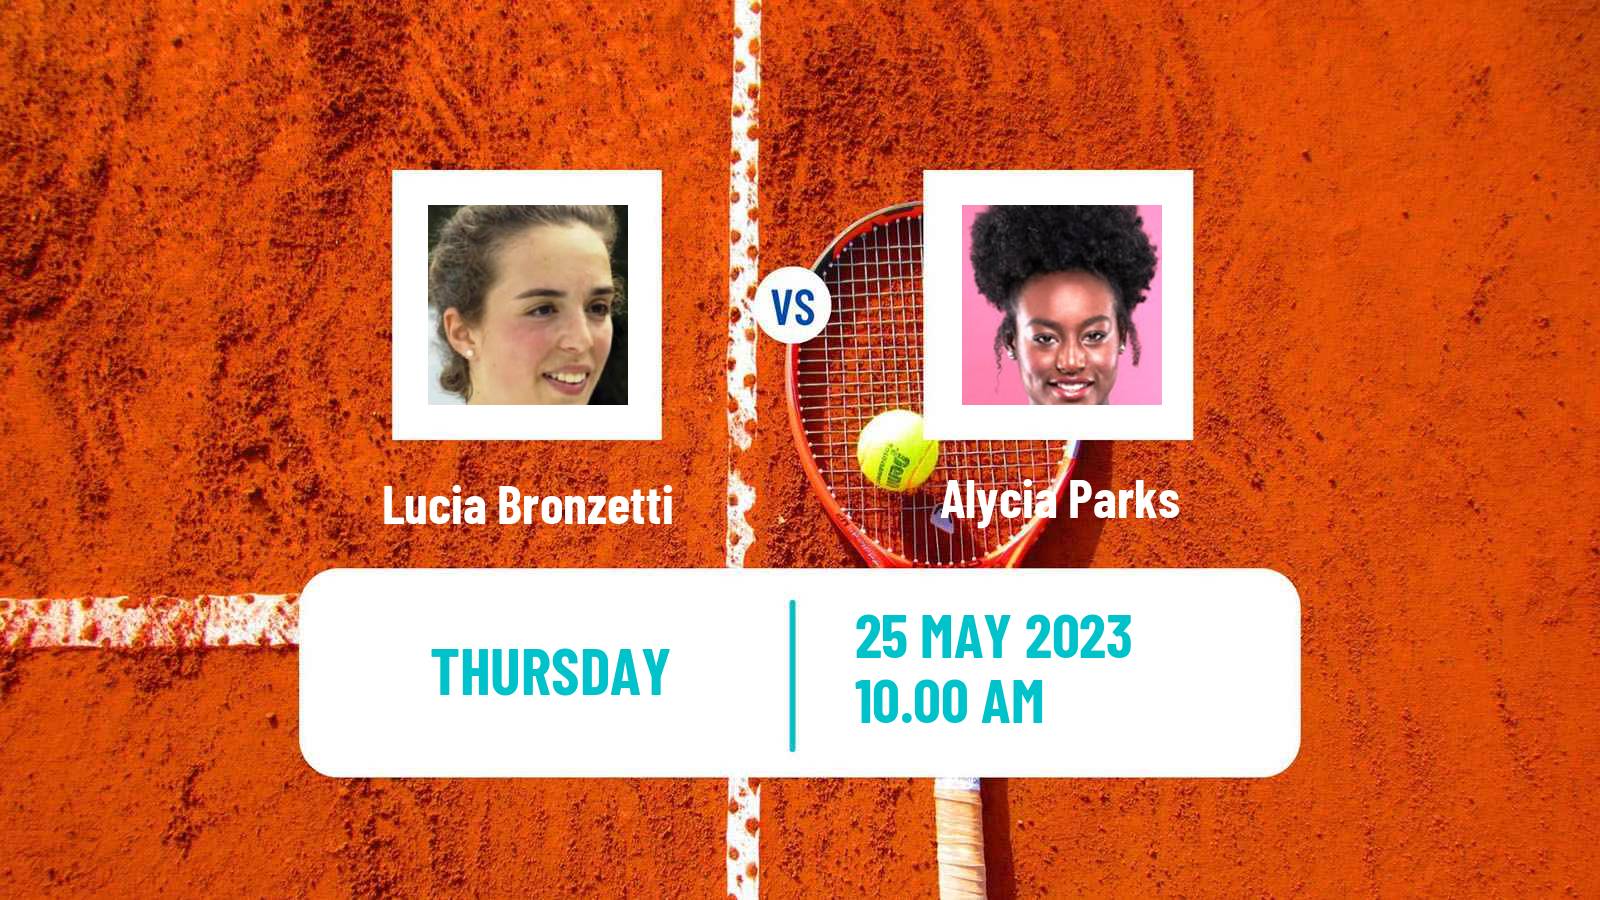 Tennis WTA Rabat Lucia Bronzetti - Alycia Parks